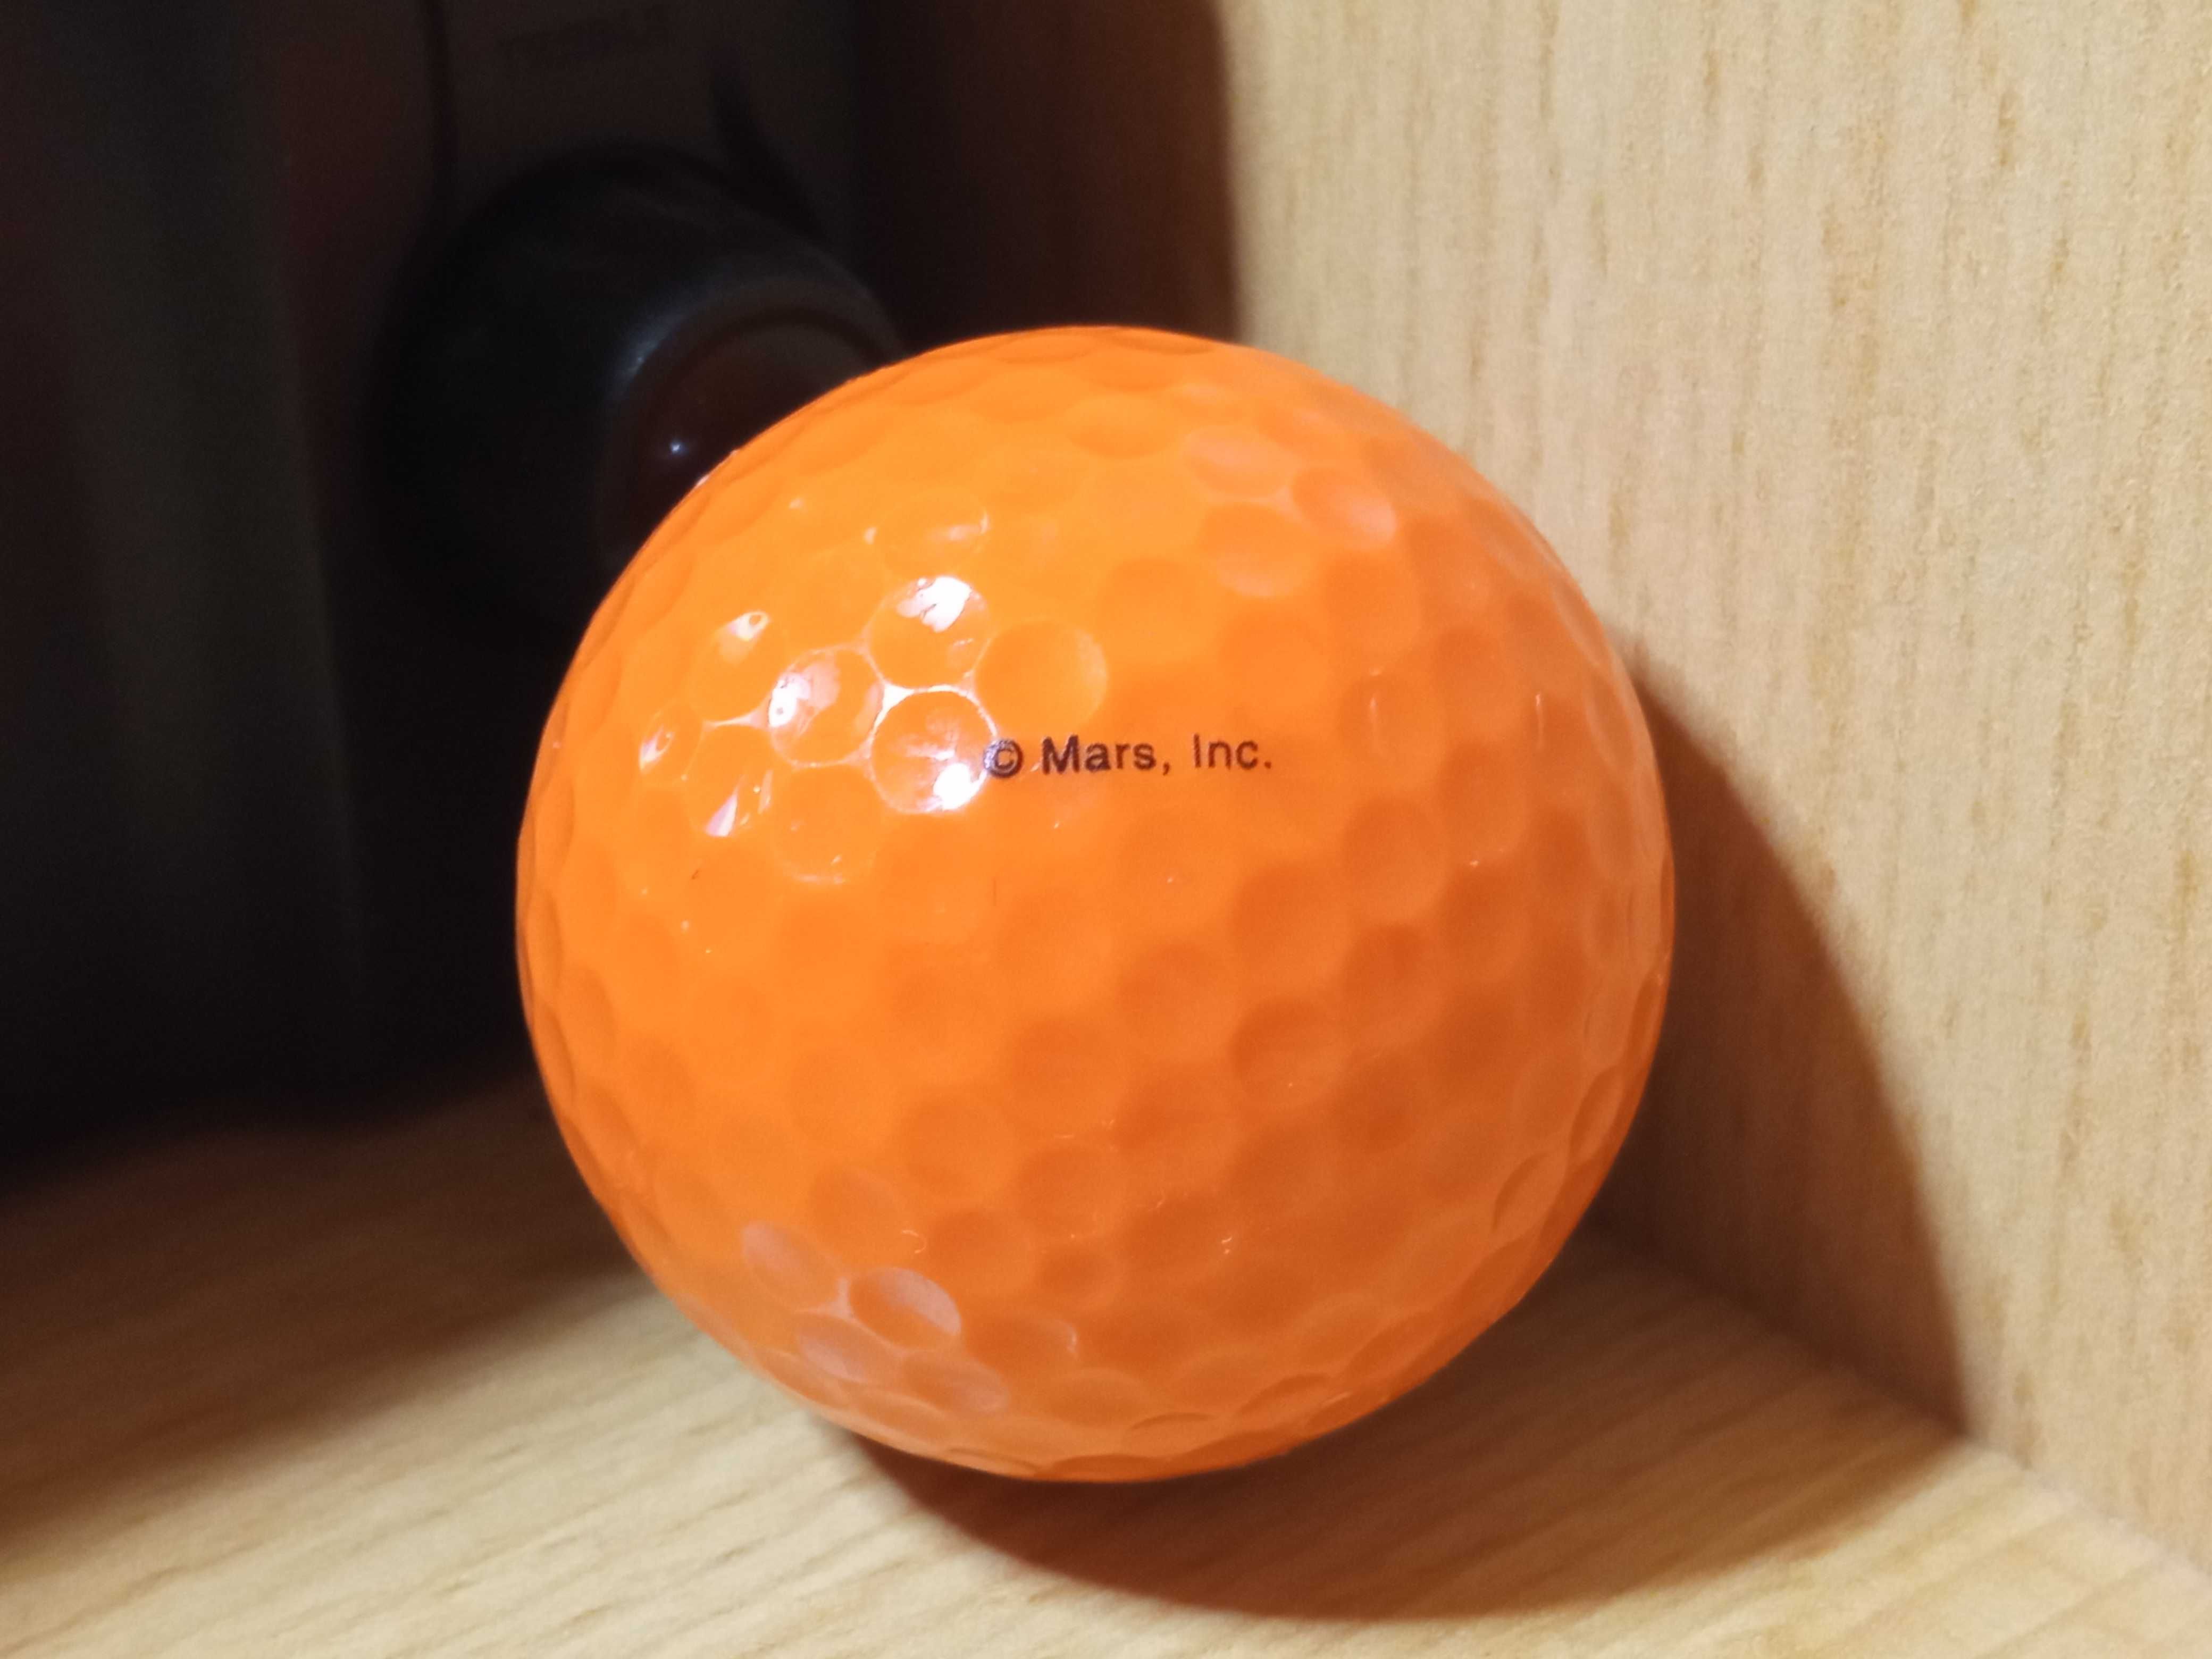 Мячик для гольфа M&MS (Mars. inc)